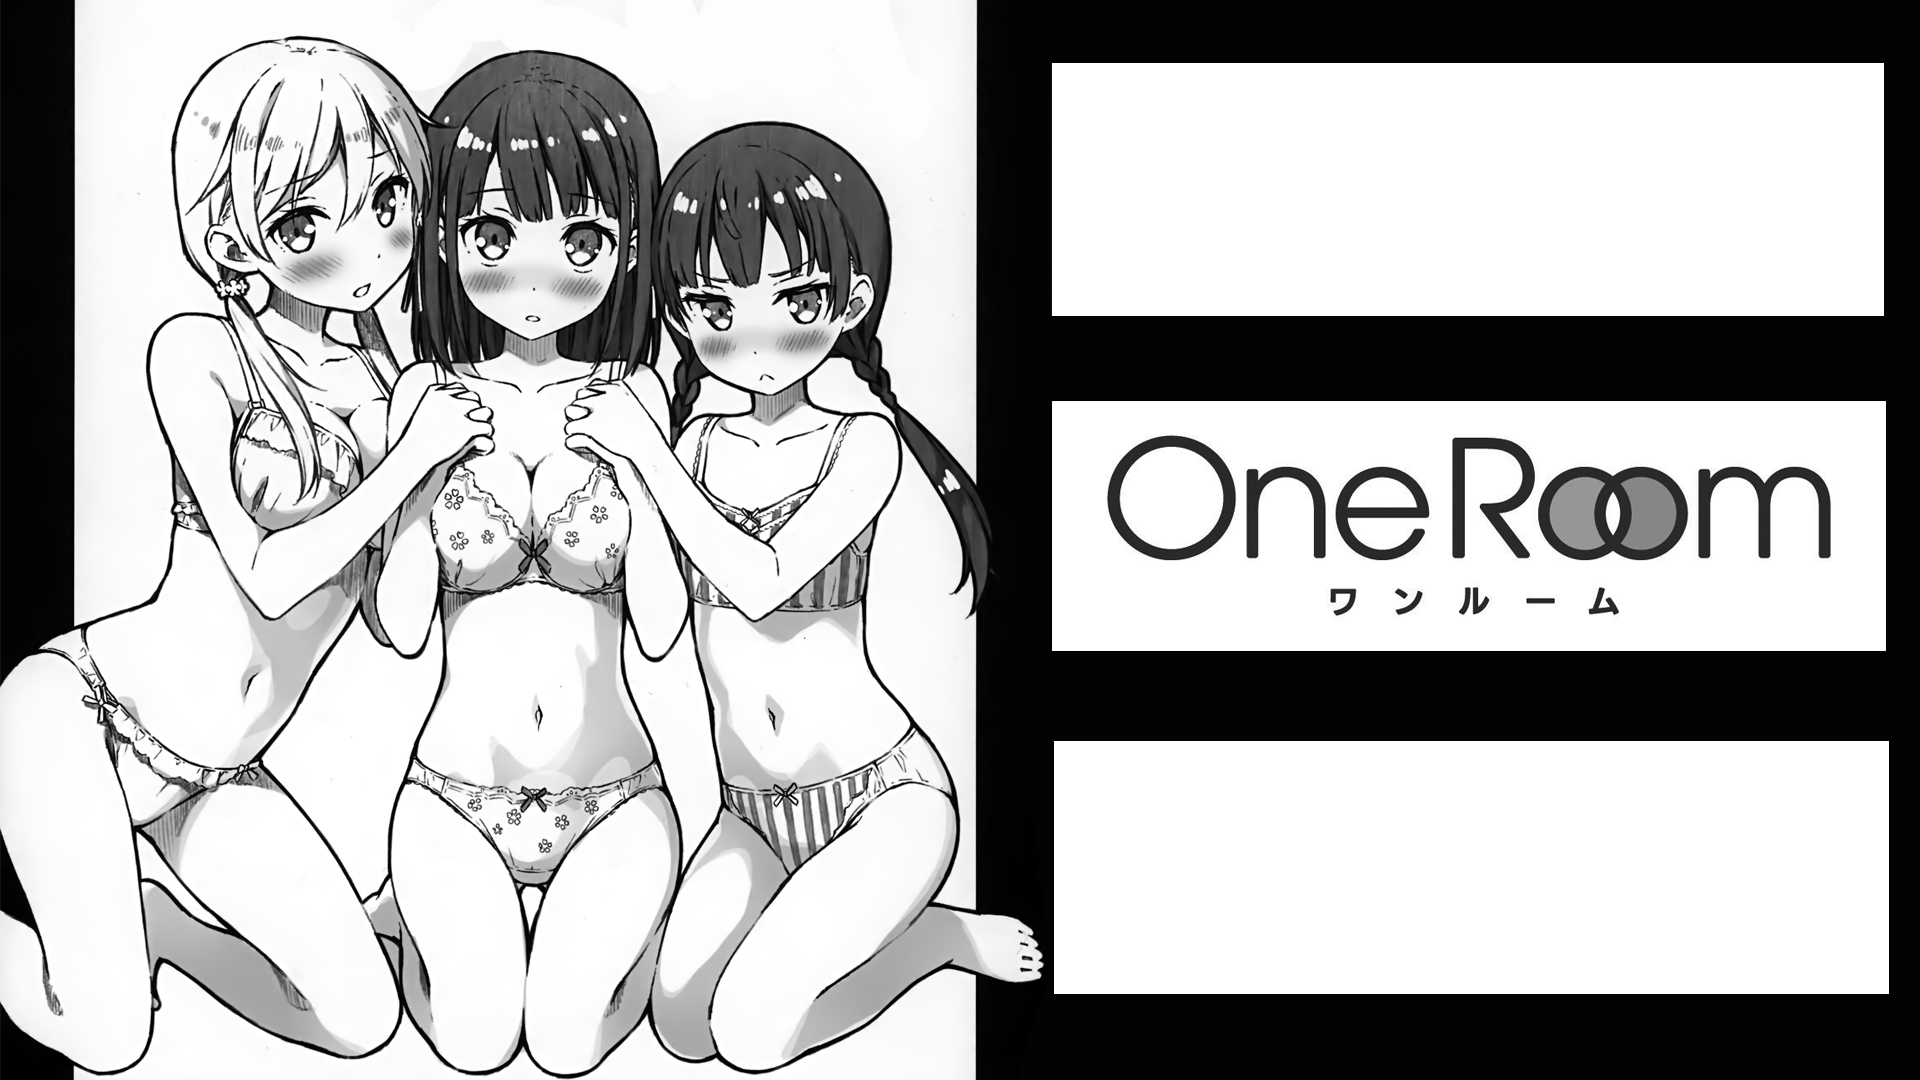 Anime 1920x1080 Kantoku anime girls One Room